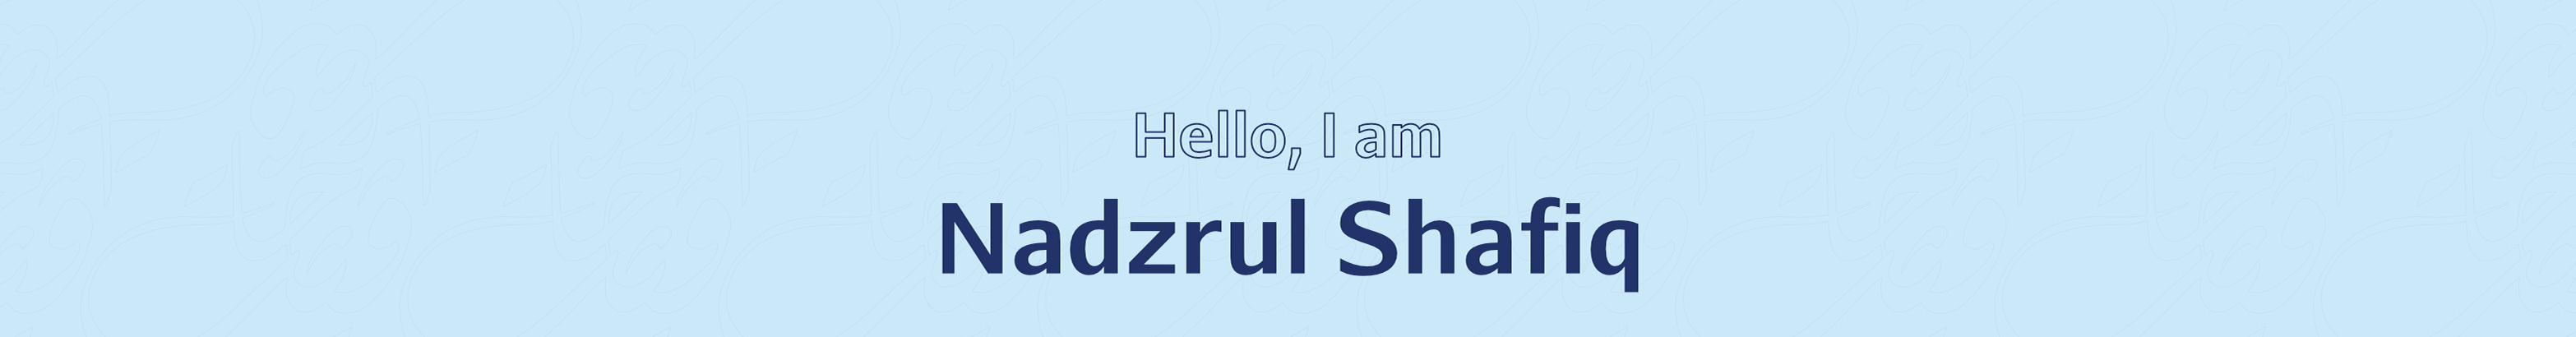 Nadzrul Shafiq's profile banner